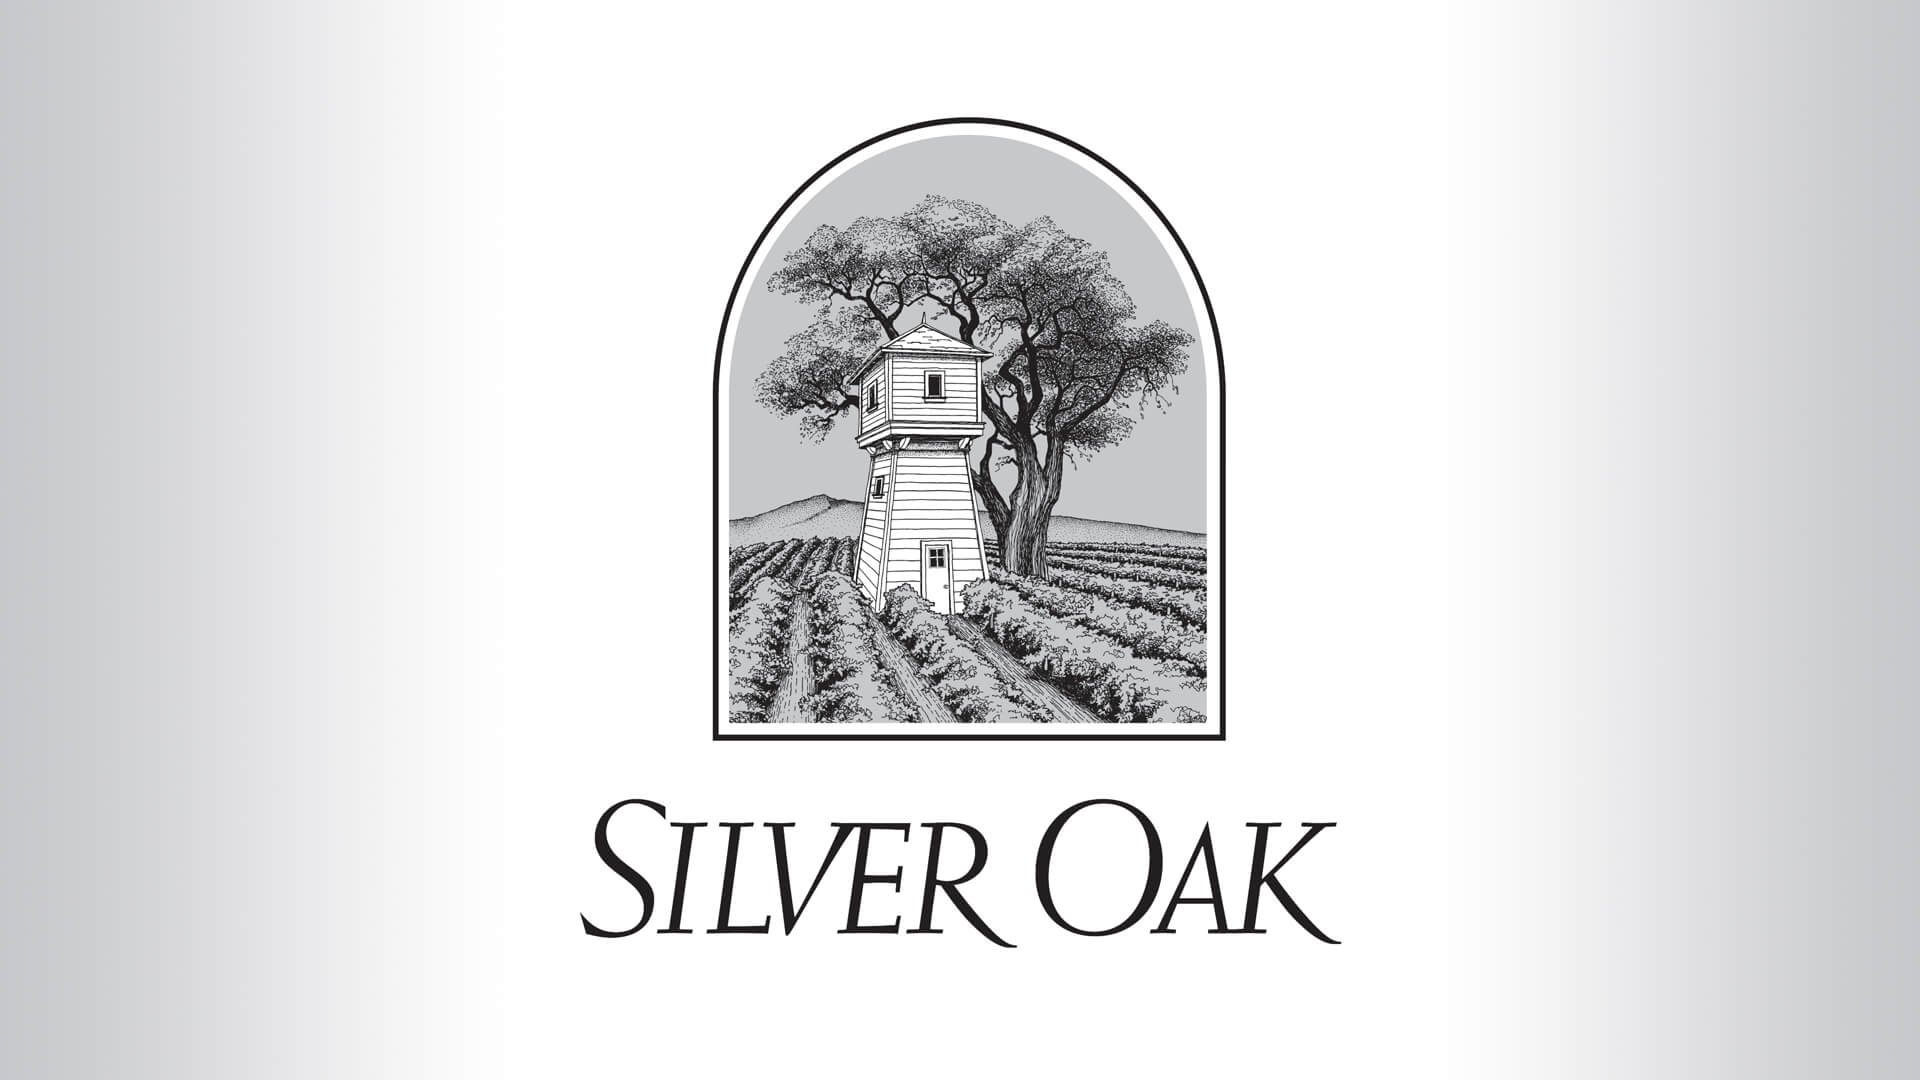 Silver-Oak-logo-hero-image_v01_1920x1080